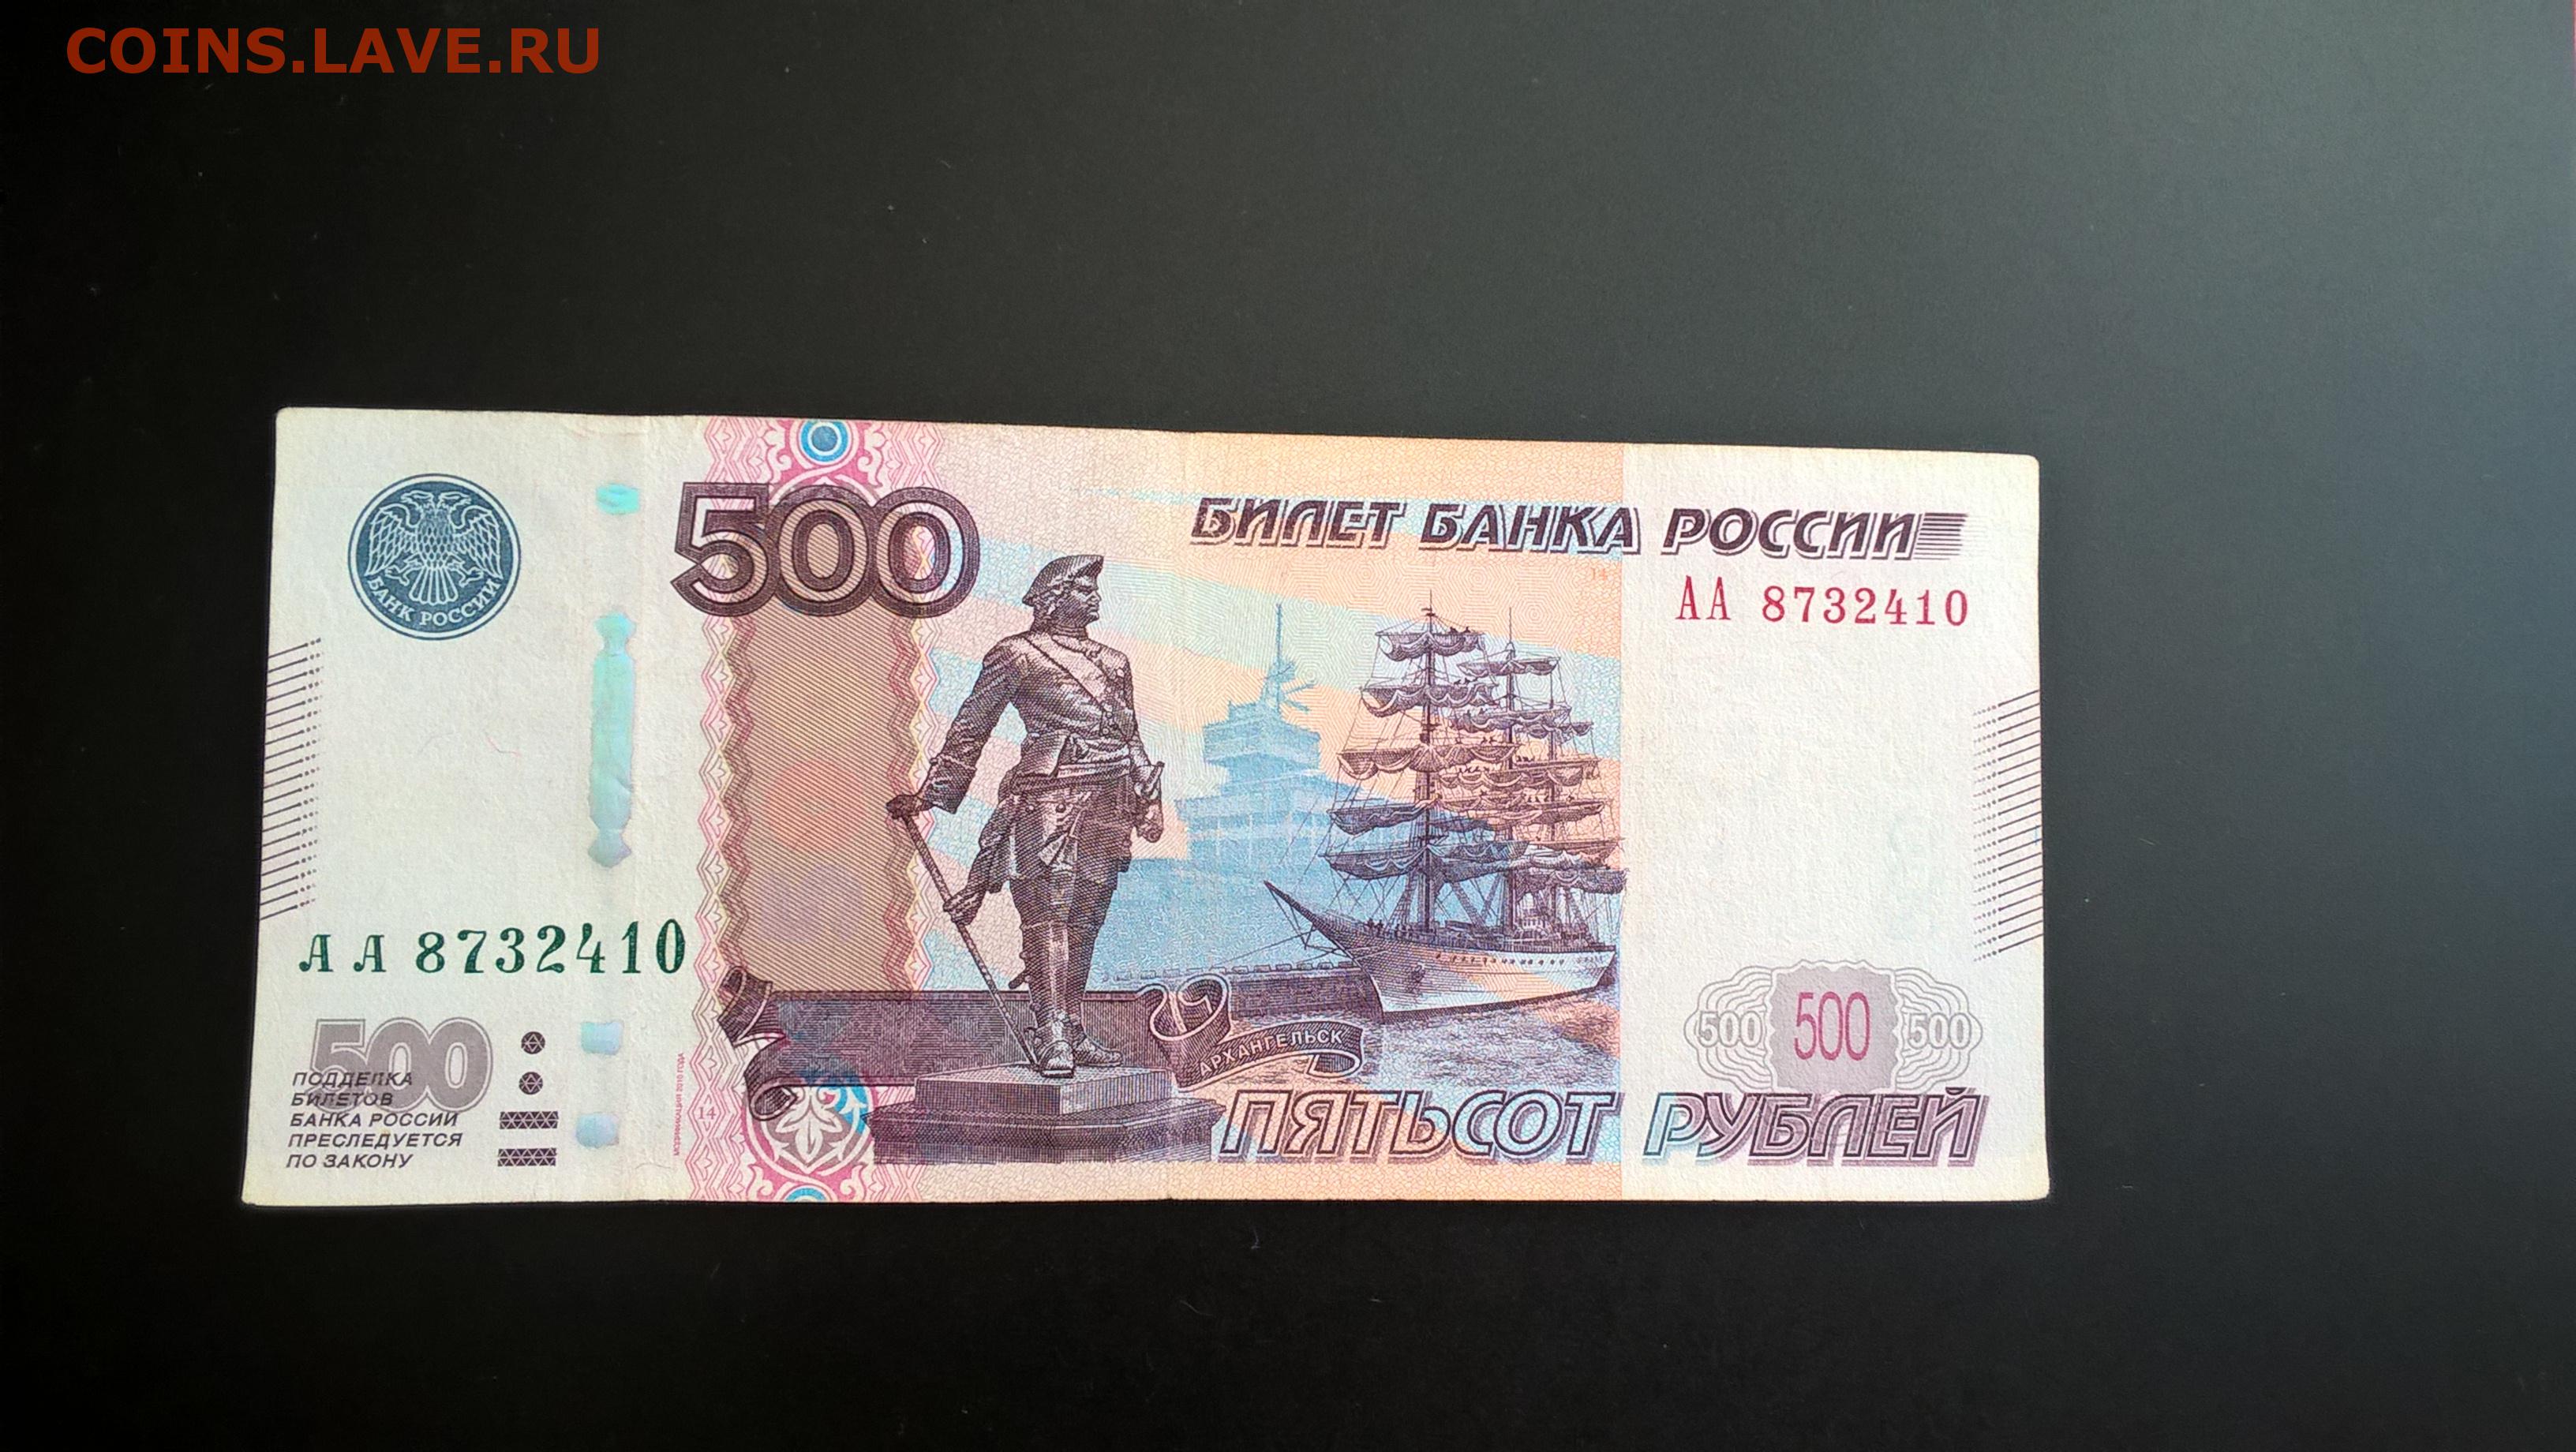 Пятьсот четыре рубля. Купюра 500 рублей. Сувенирные 500 рублей. Банкнота 500 рублей. Деньги 500 рублей.